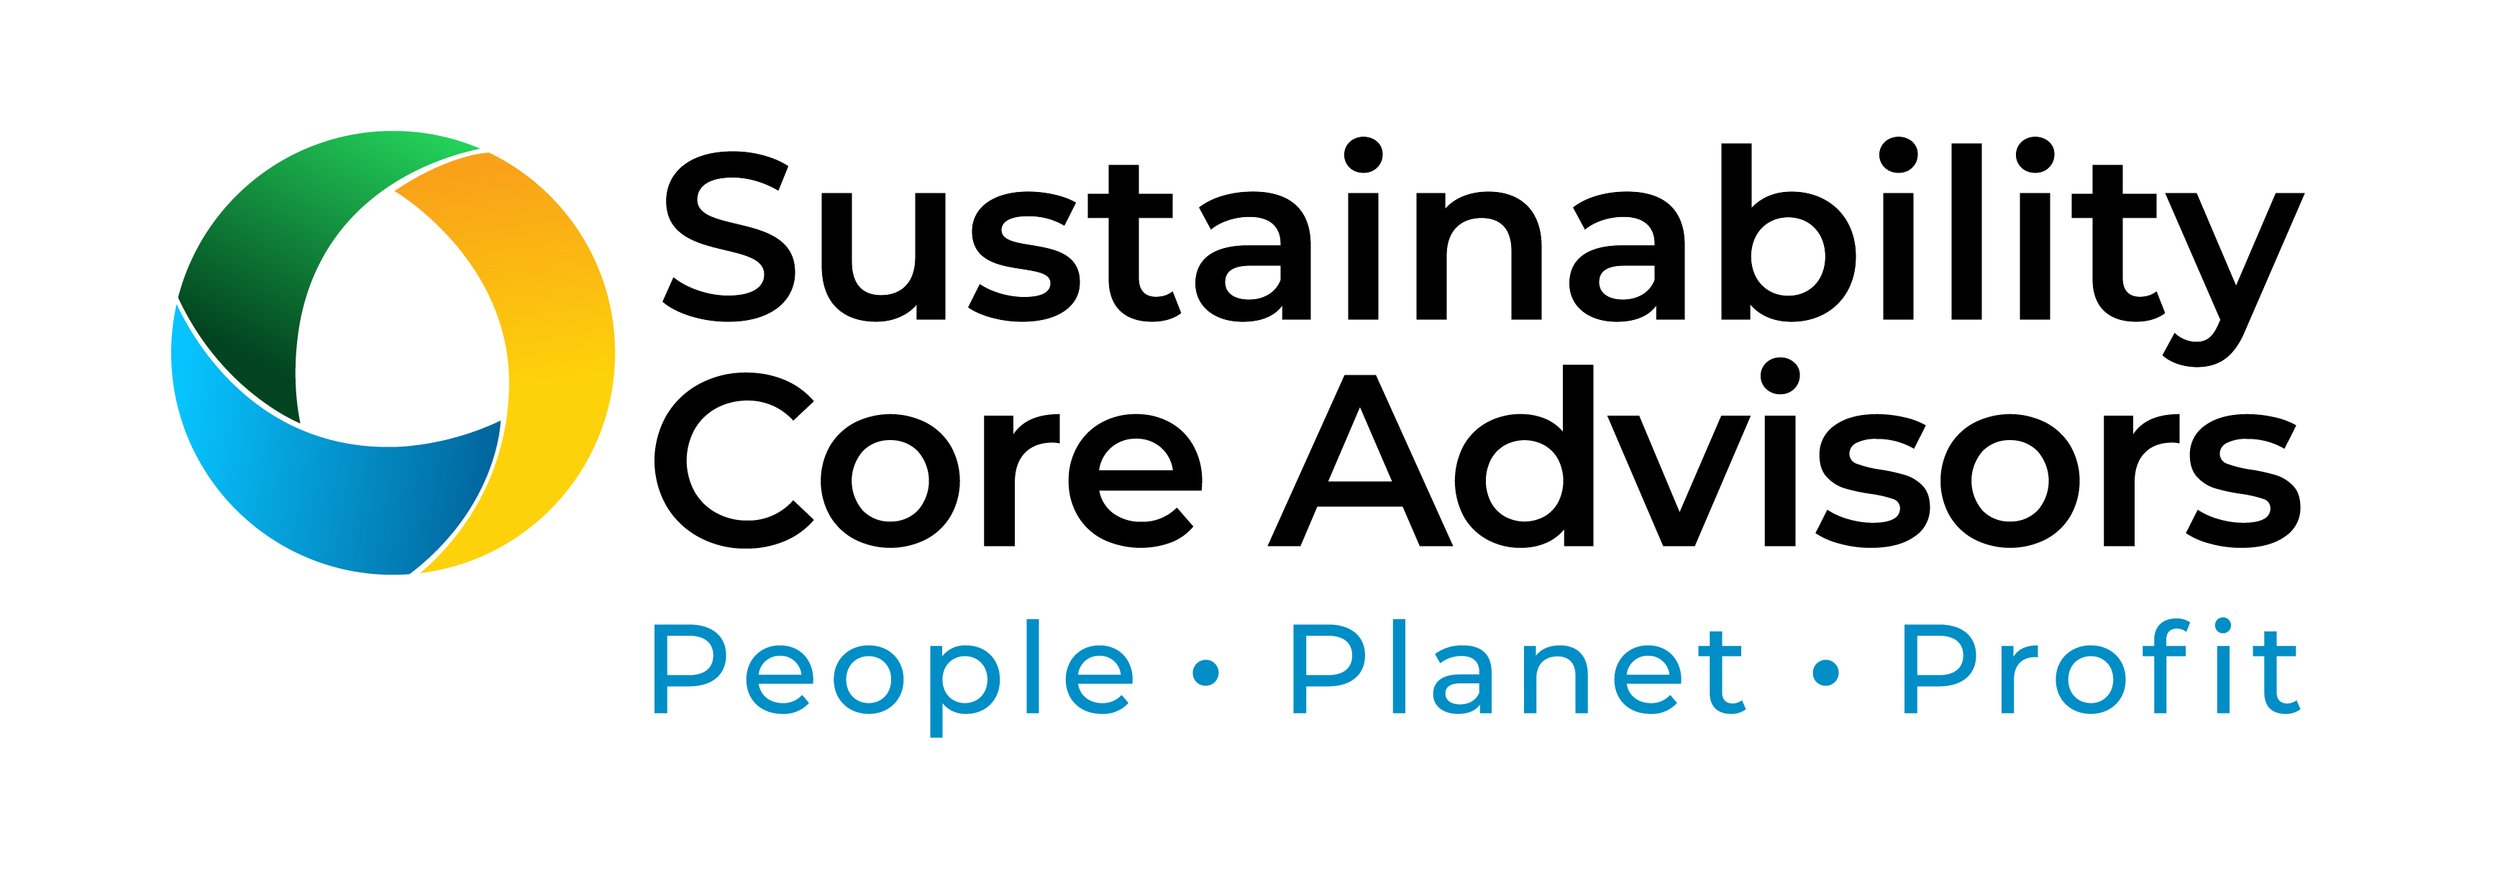 Sustainability Core Advisors-Updated Logos-09.jpg